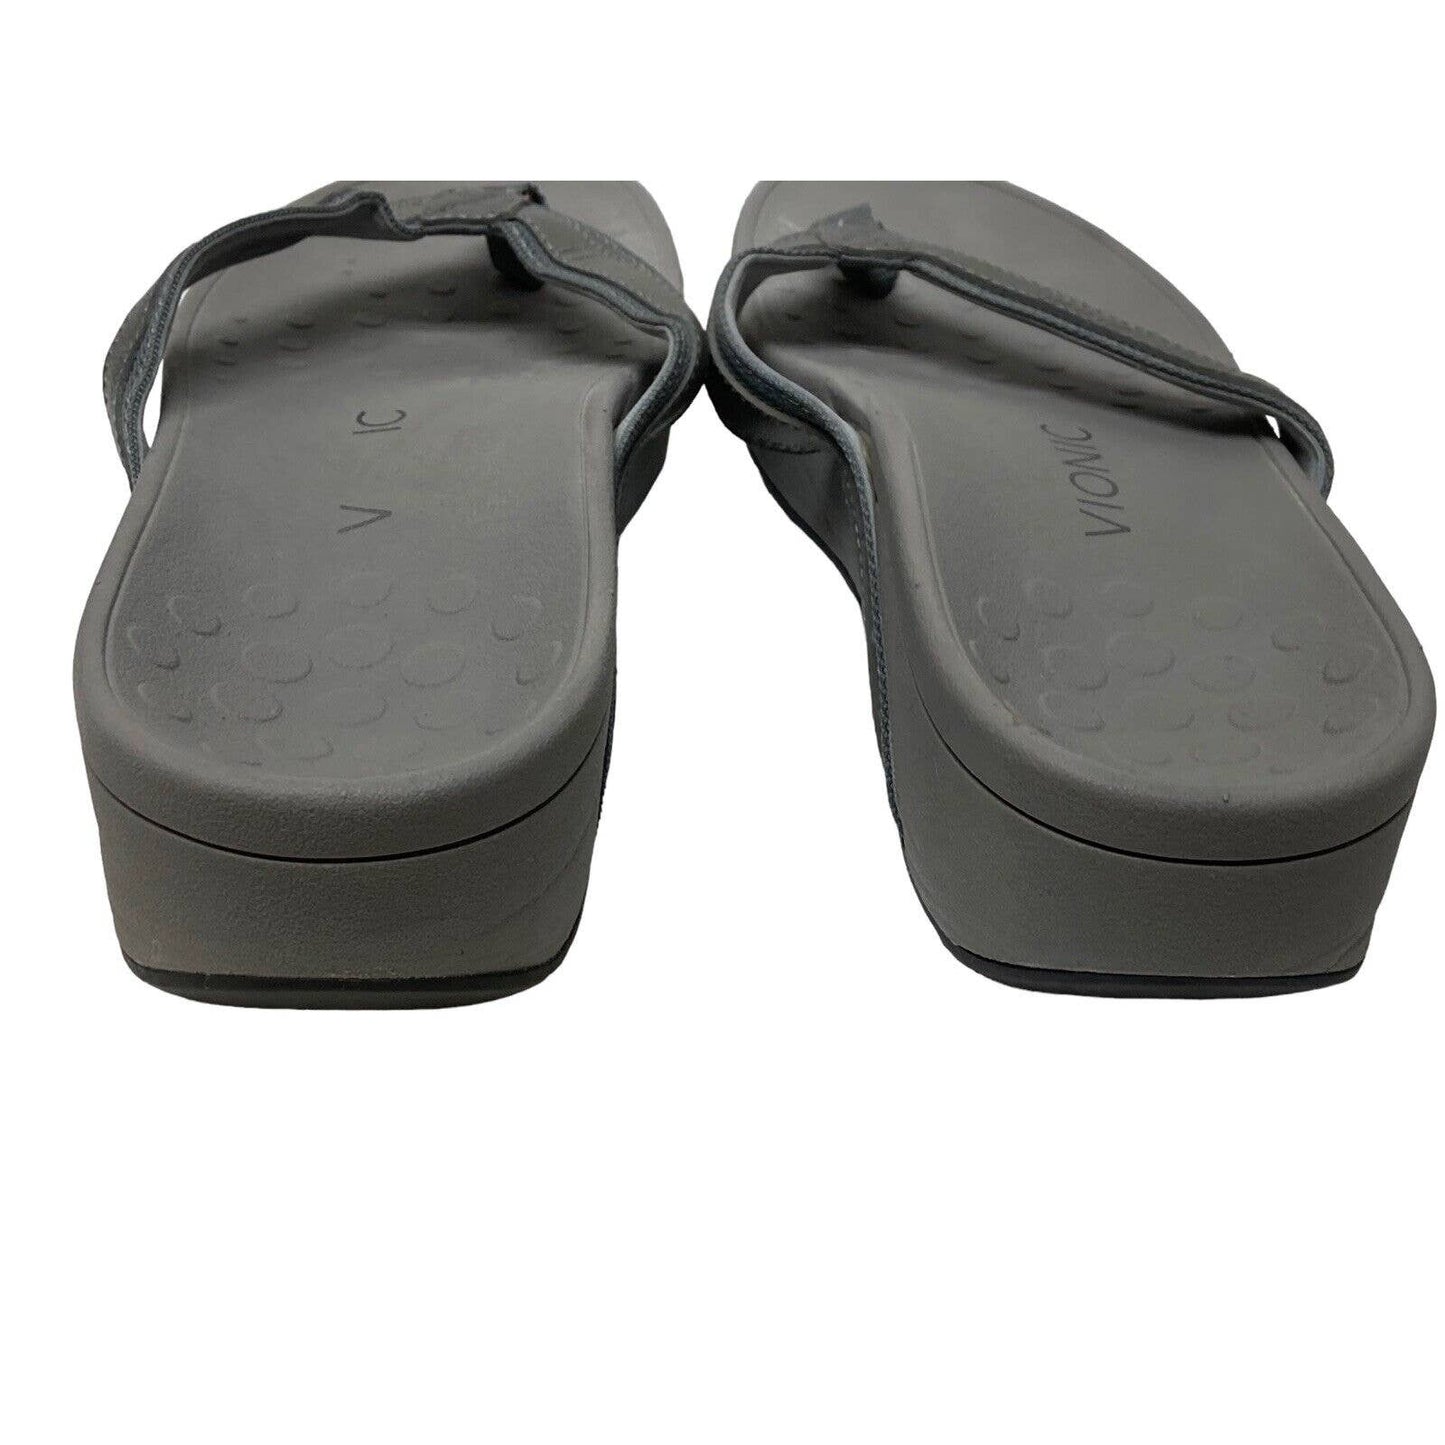 Vionic High Tide Platform Sandals Grey Size 9 TVW4895